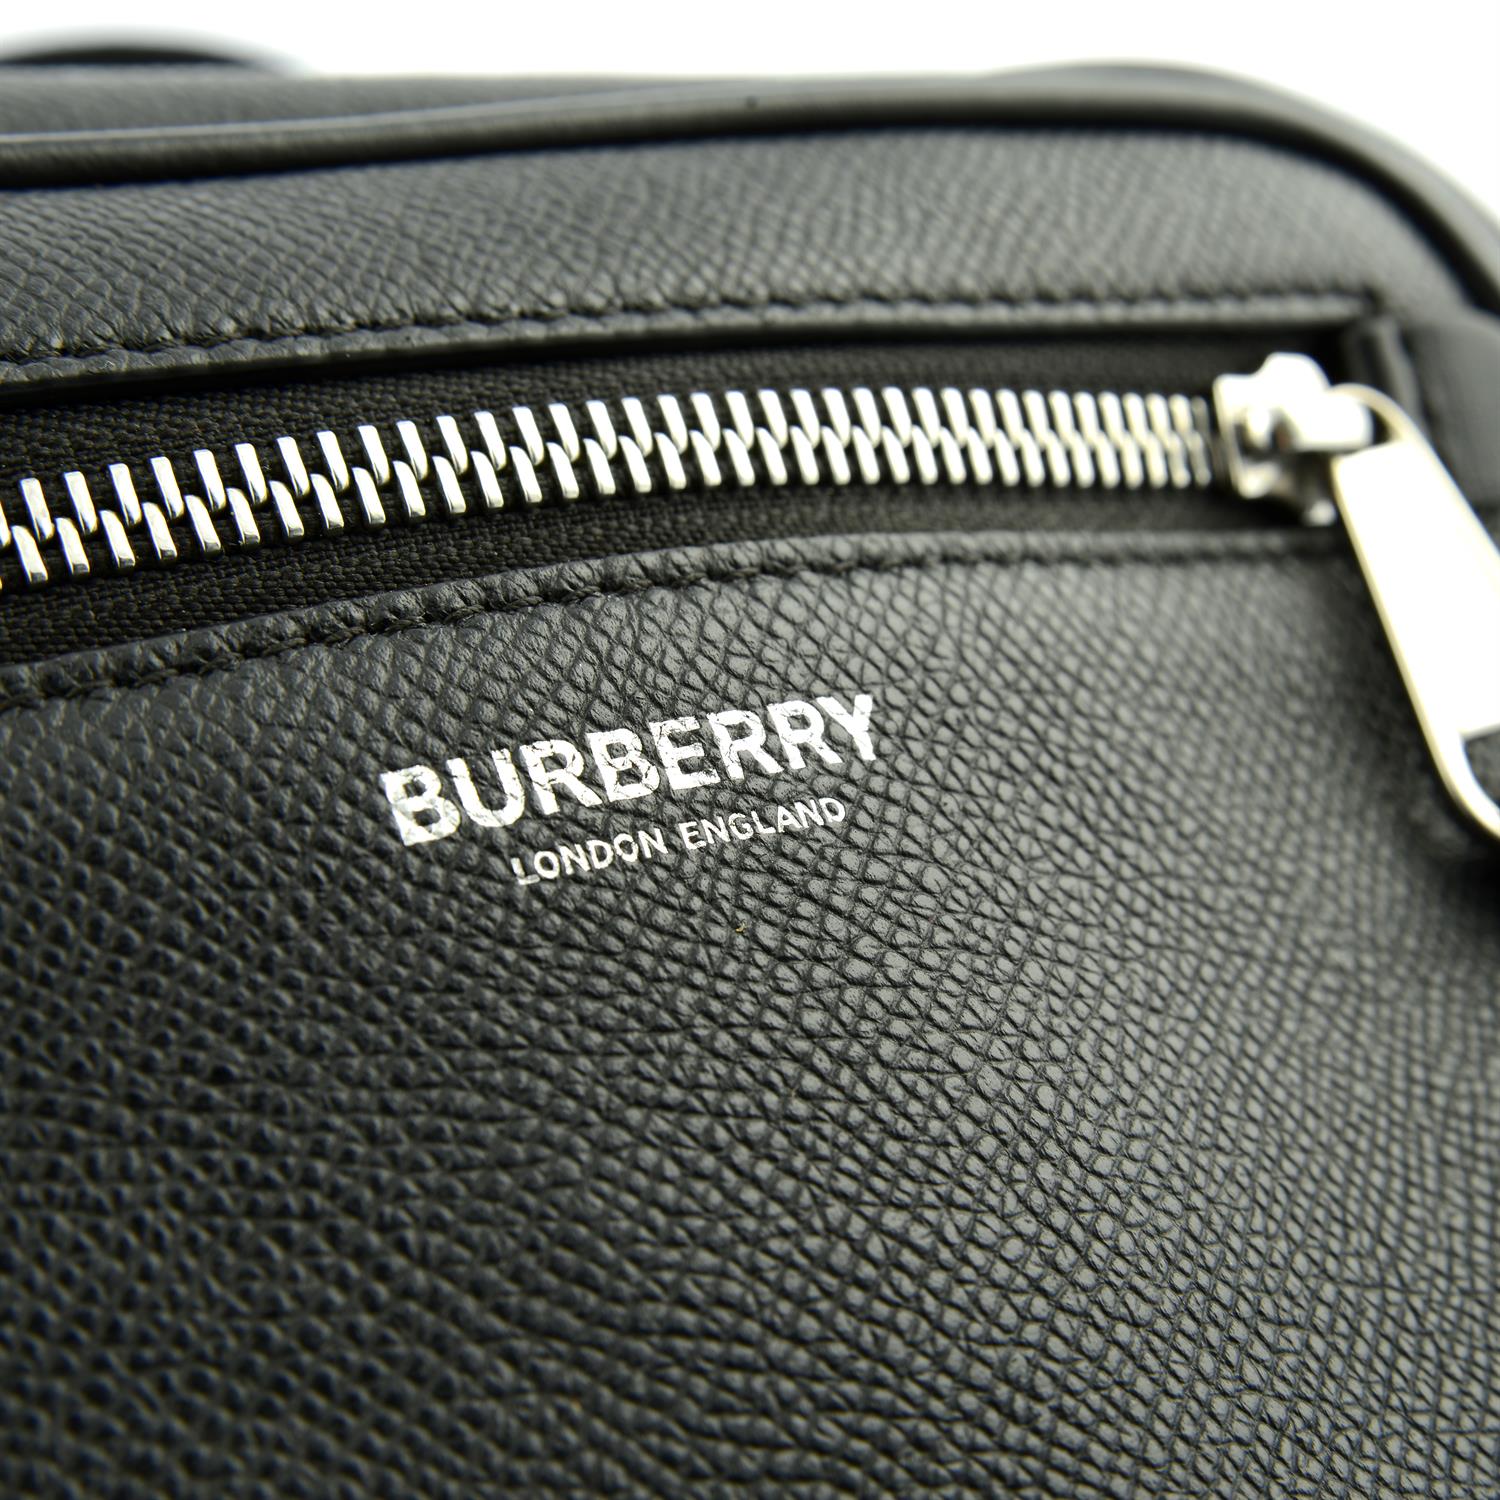 BURBERRY - a black leather camera handbag. - Image 5 of 6